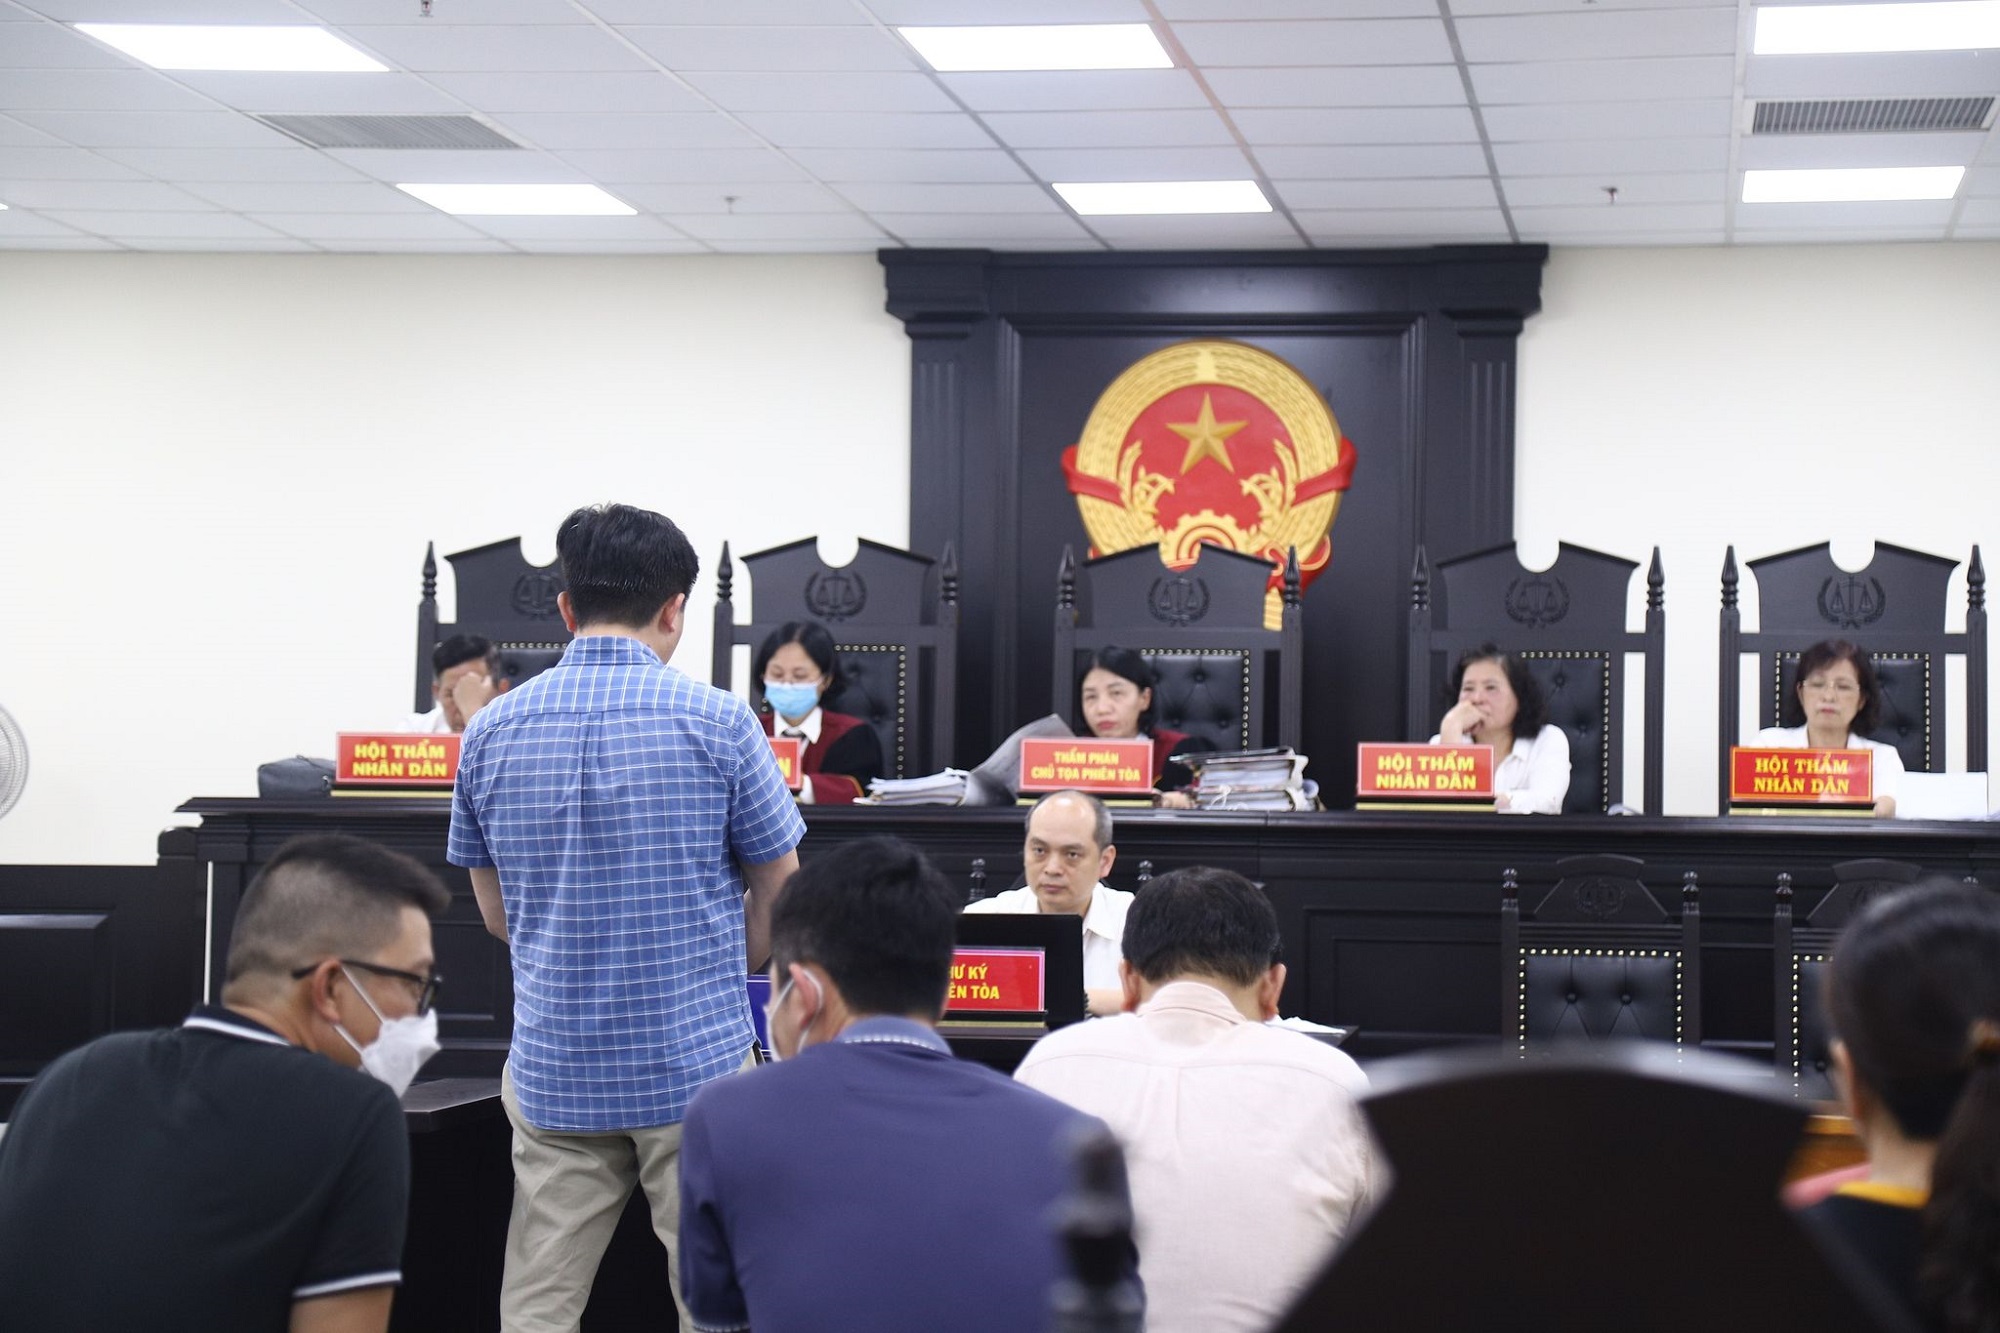 Tòa án Hà Nội bất ngờ ra quyết định trả hồ sơ, yêu cầu điều tra bổ sung vụ lừa đảo chứng khoán với số tiền lên tới 300 tỷ đồng.